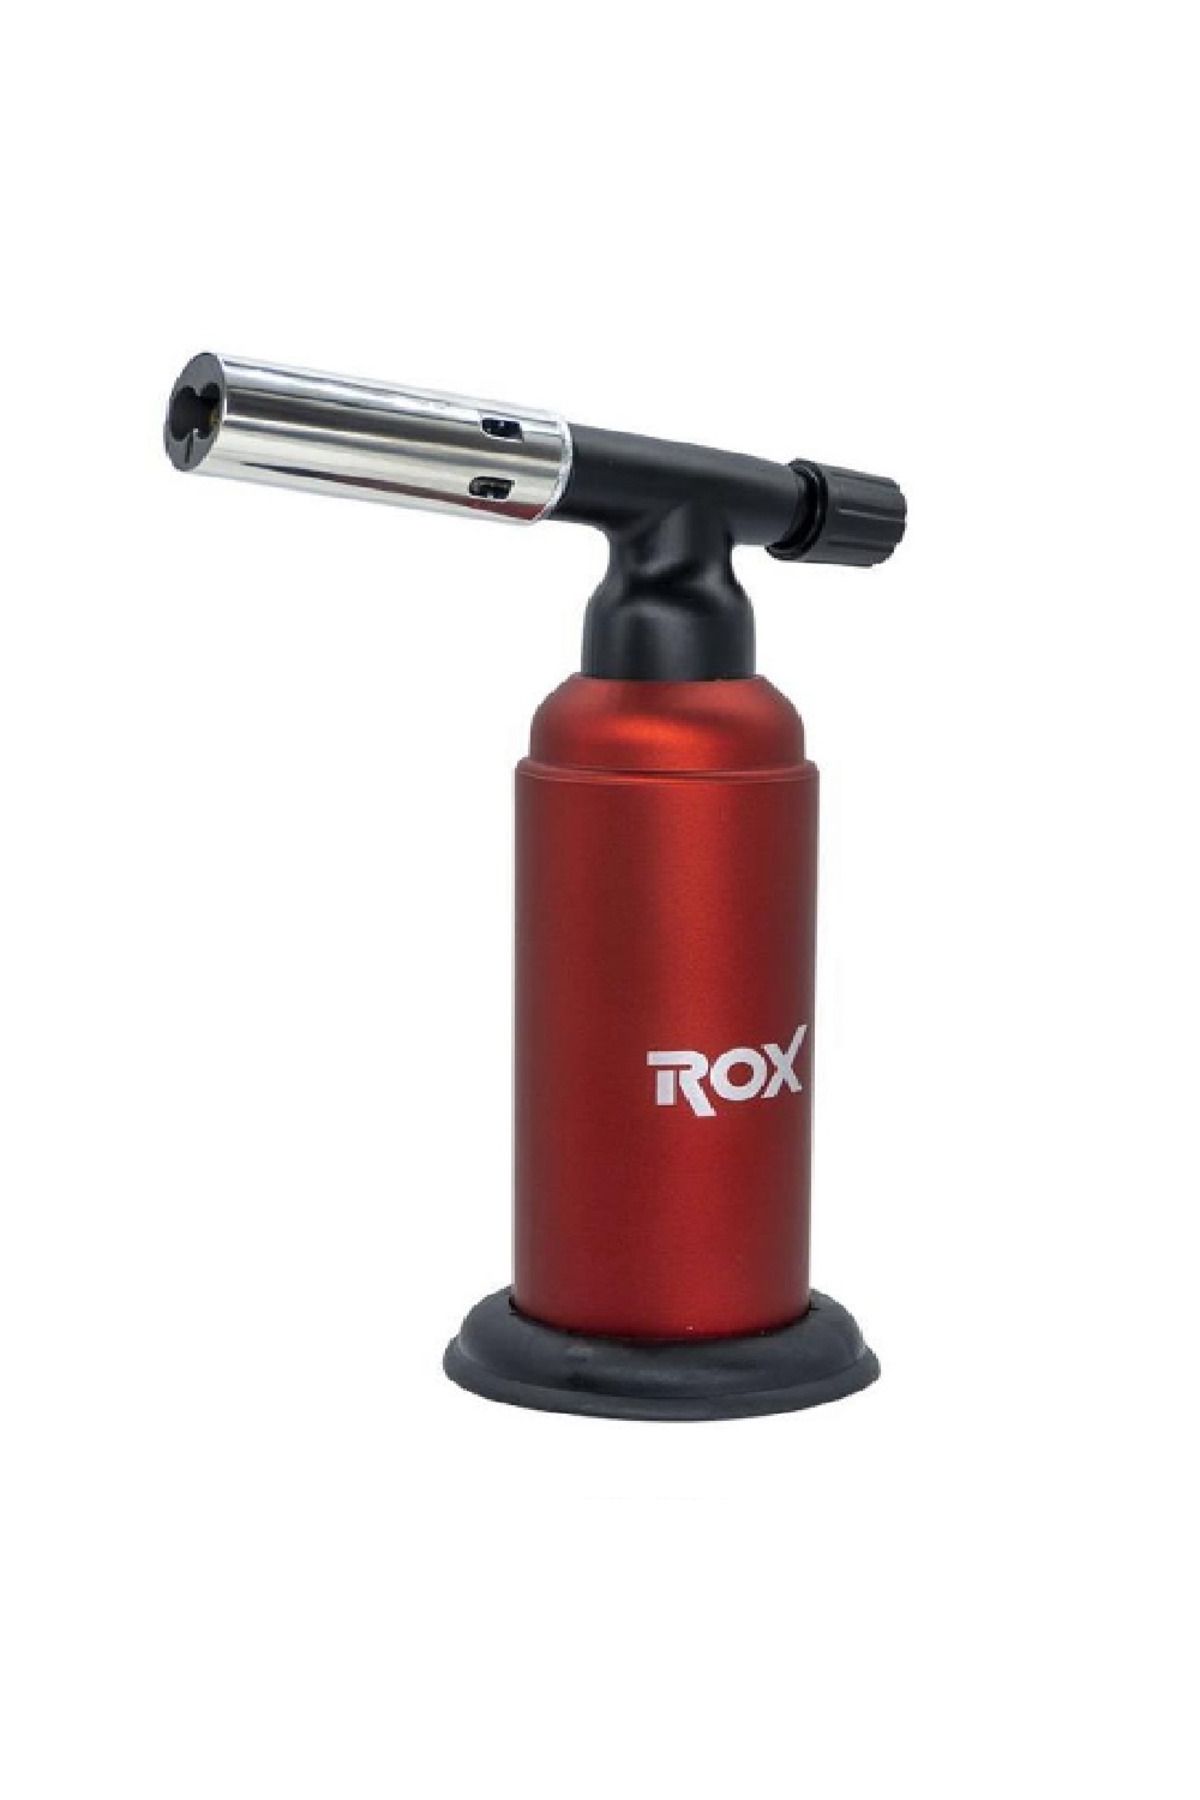 Rox Bs-630 Bütan Gaz Torch Pürmüz